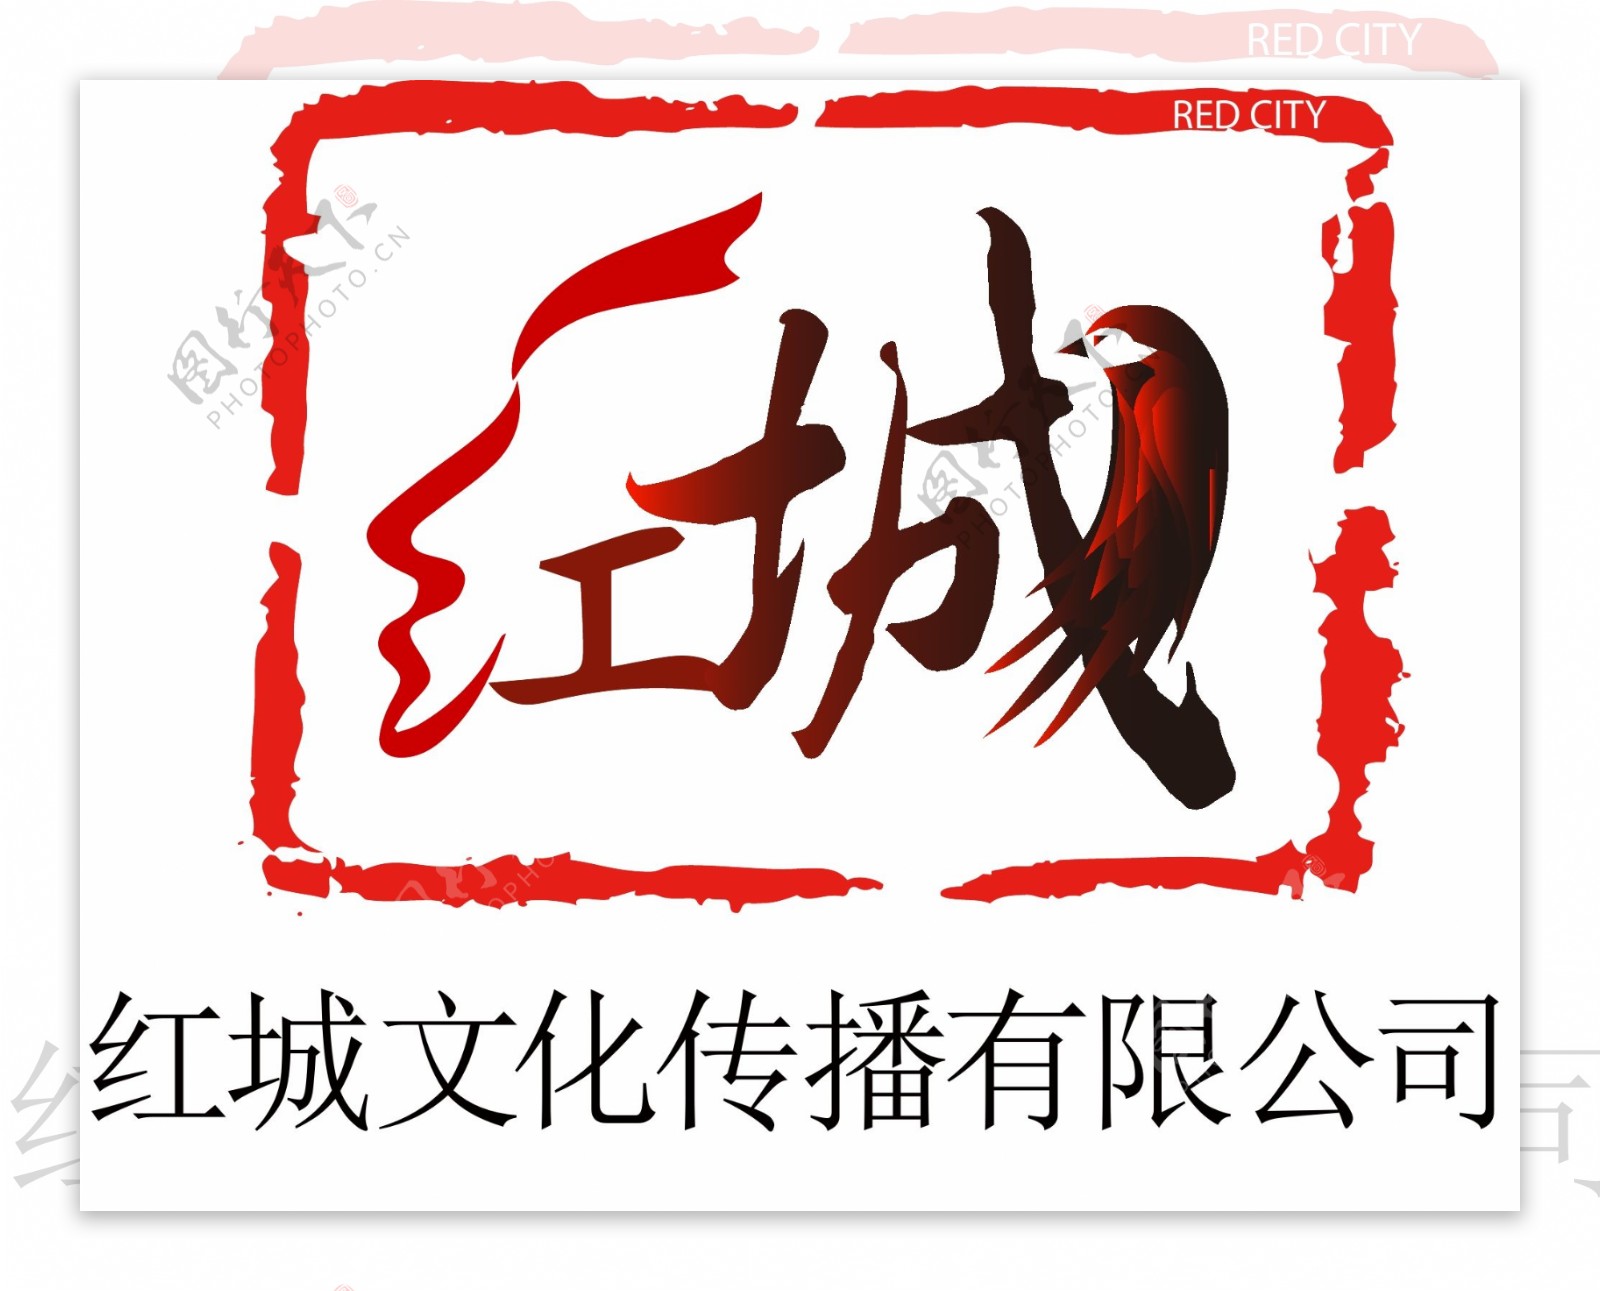 红城logo